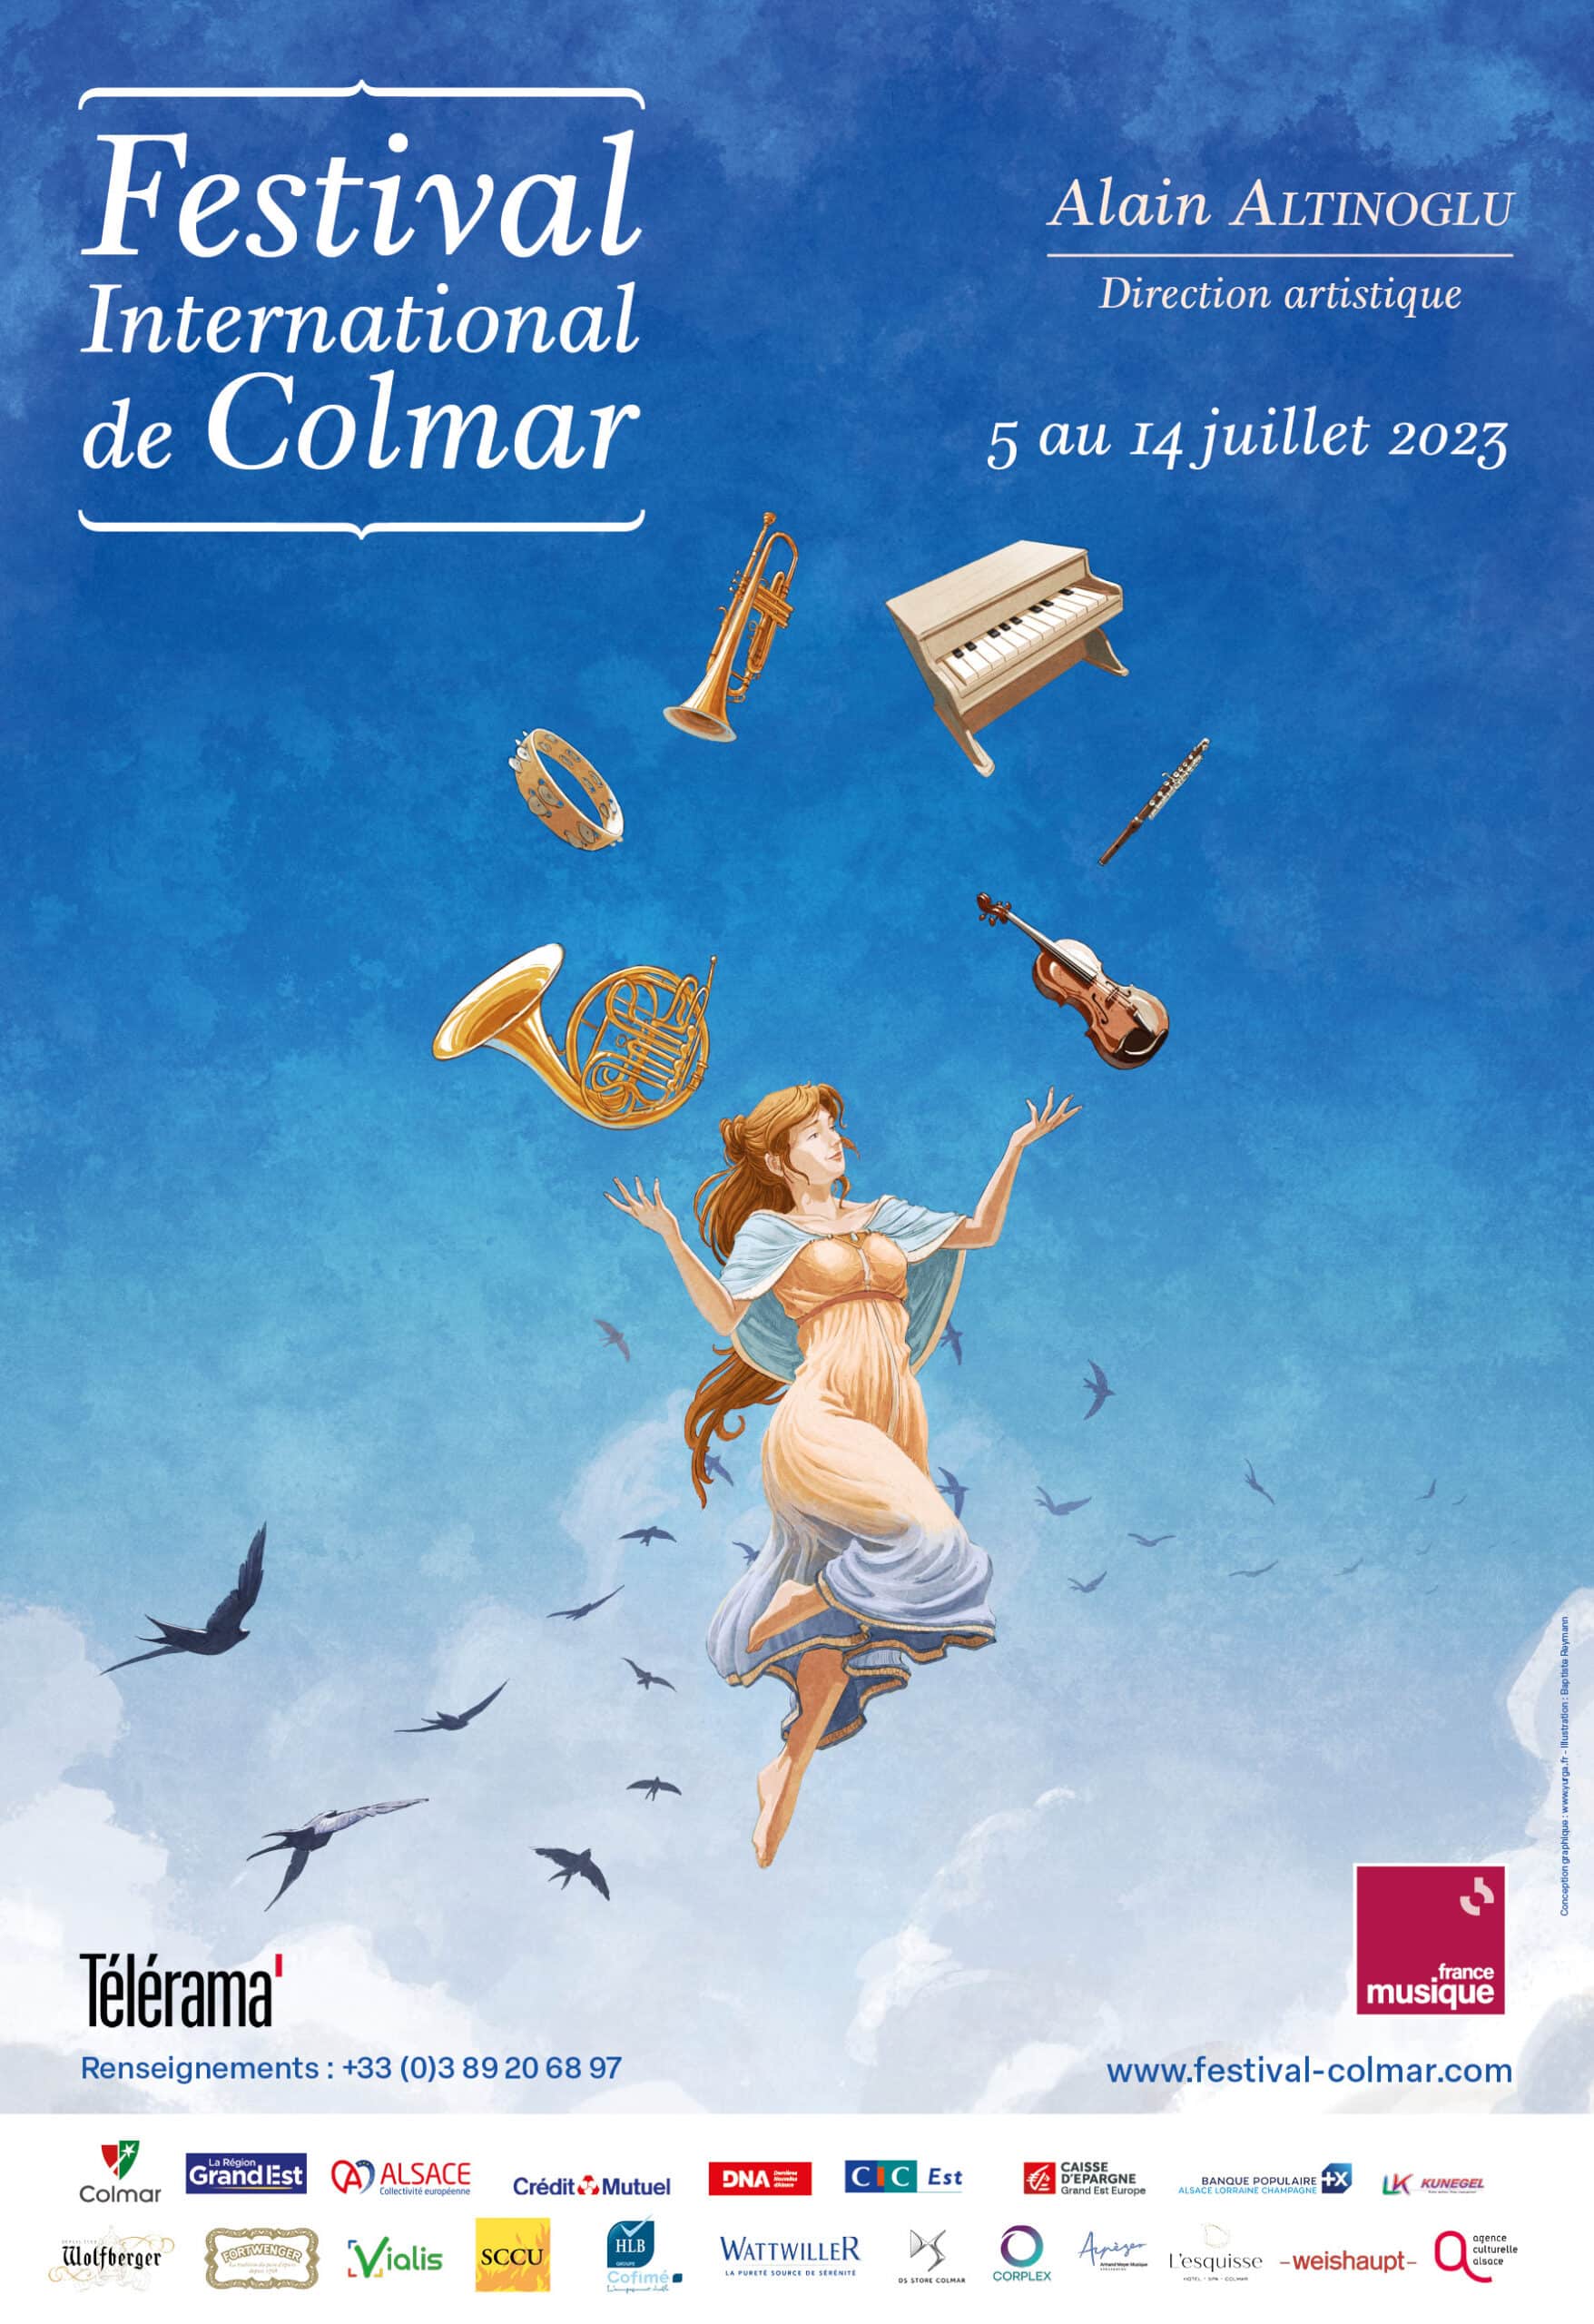 Festival International de Colmar, encore un peu de patience… Première